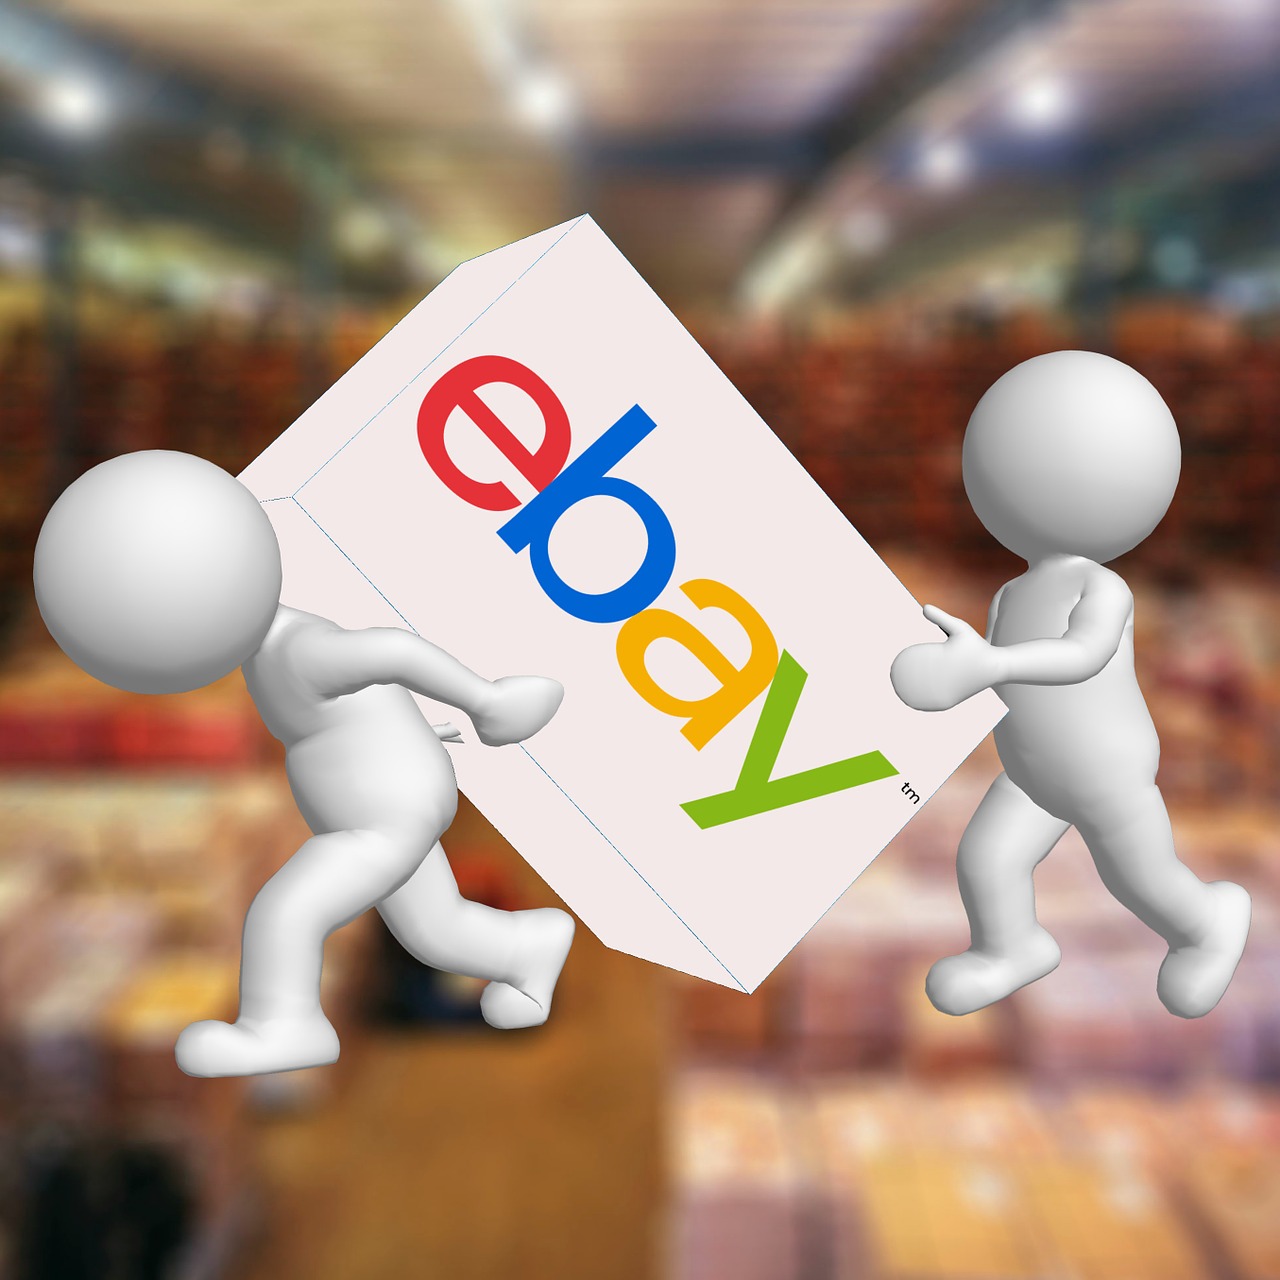 Neue Preisvorschlagfunktion bei eBay mit vielen Fragen